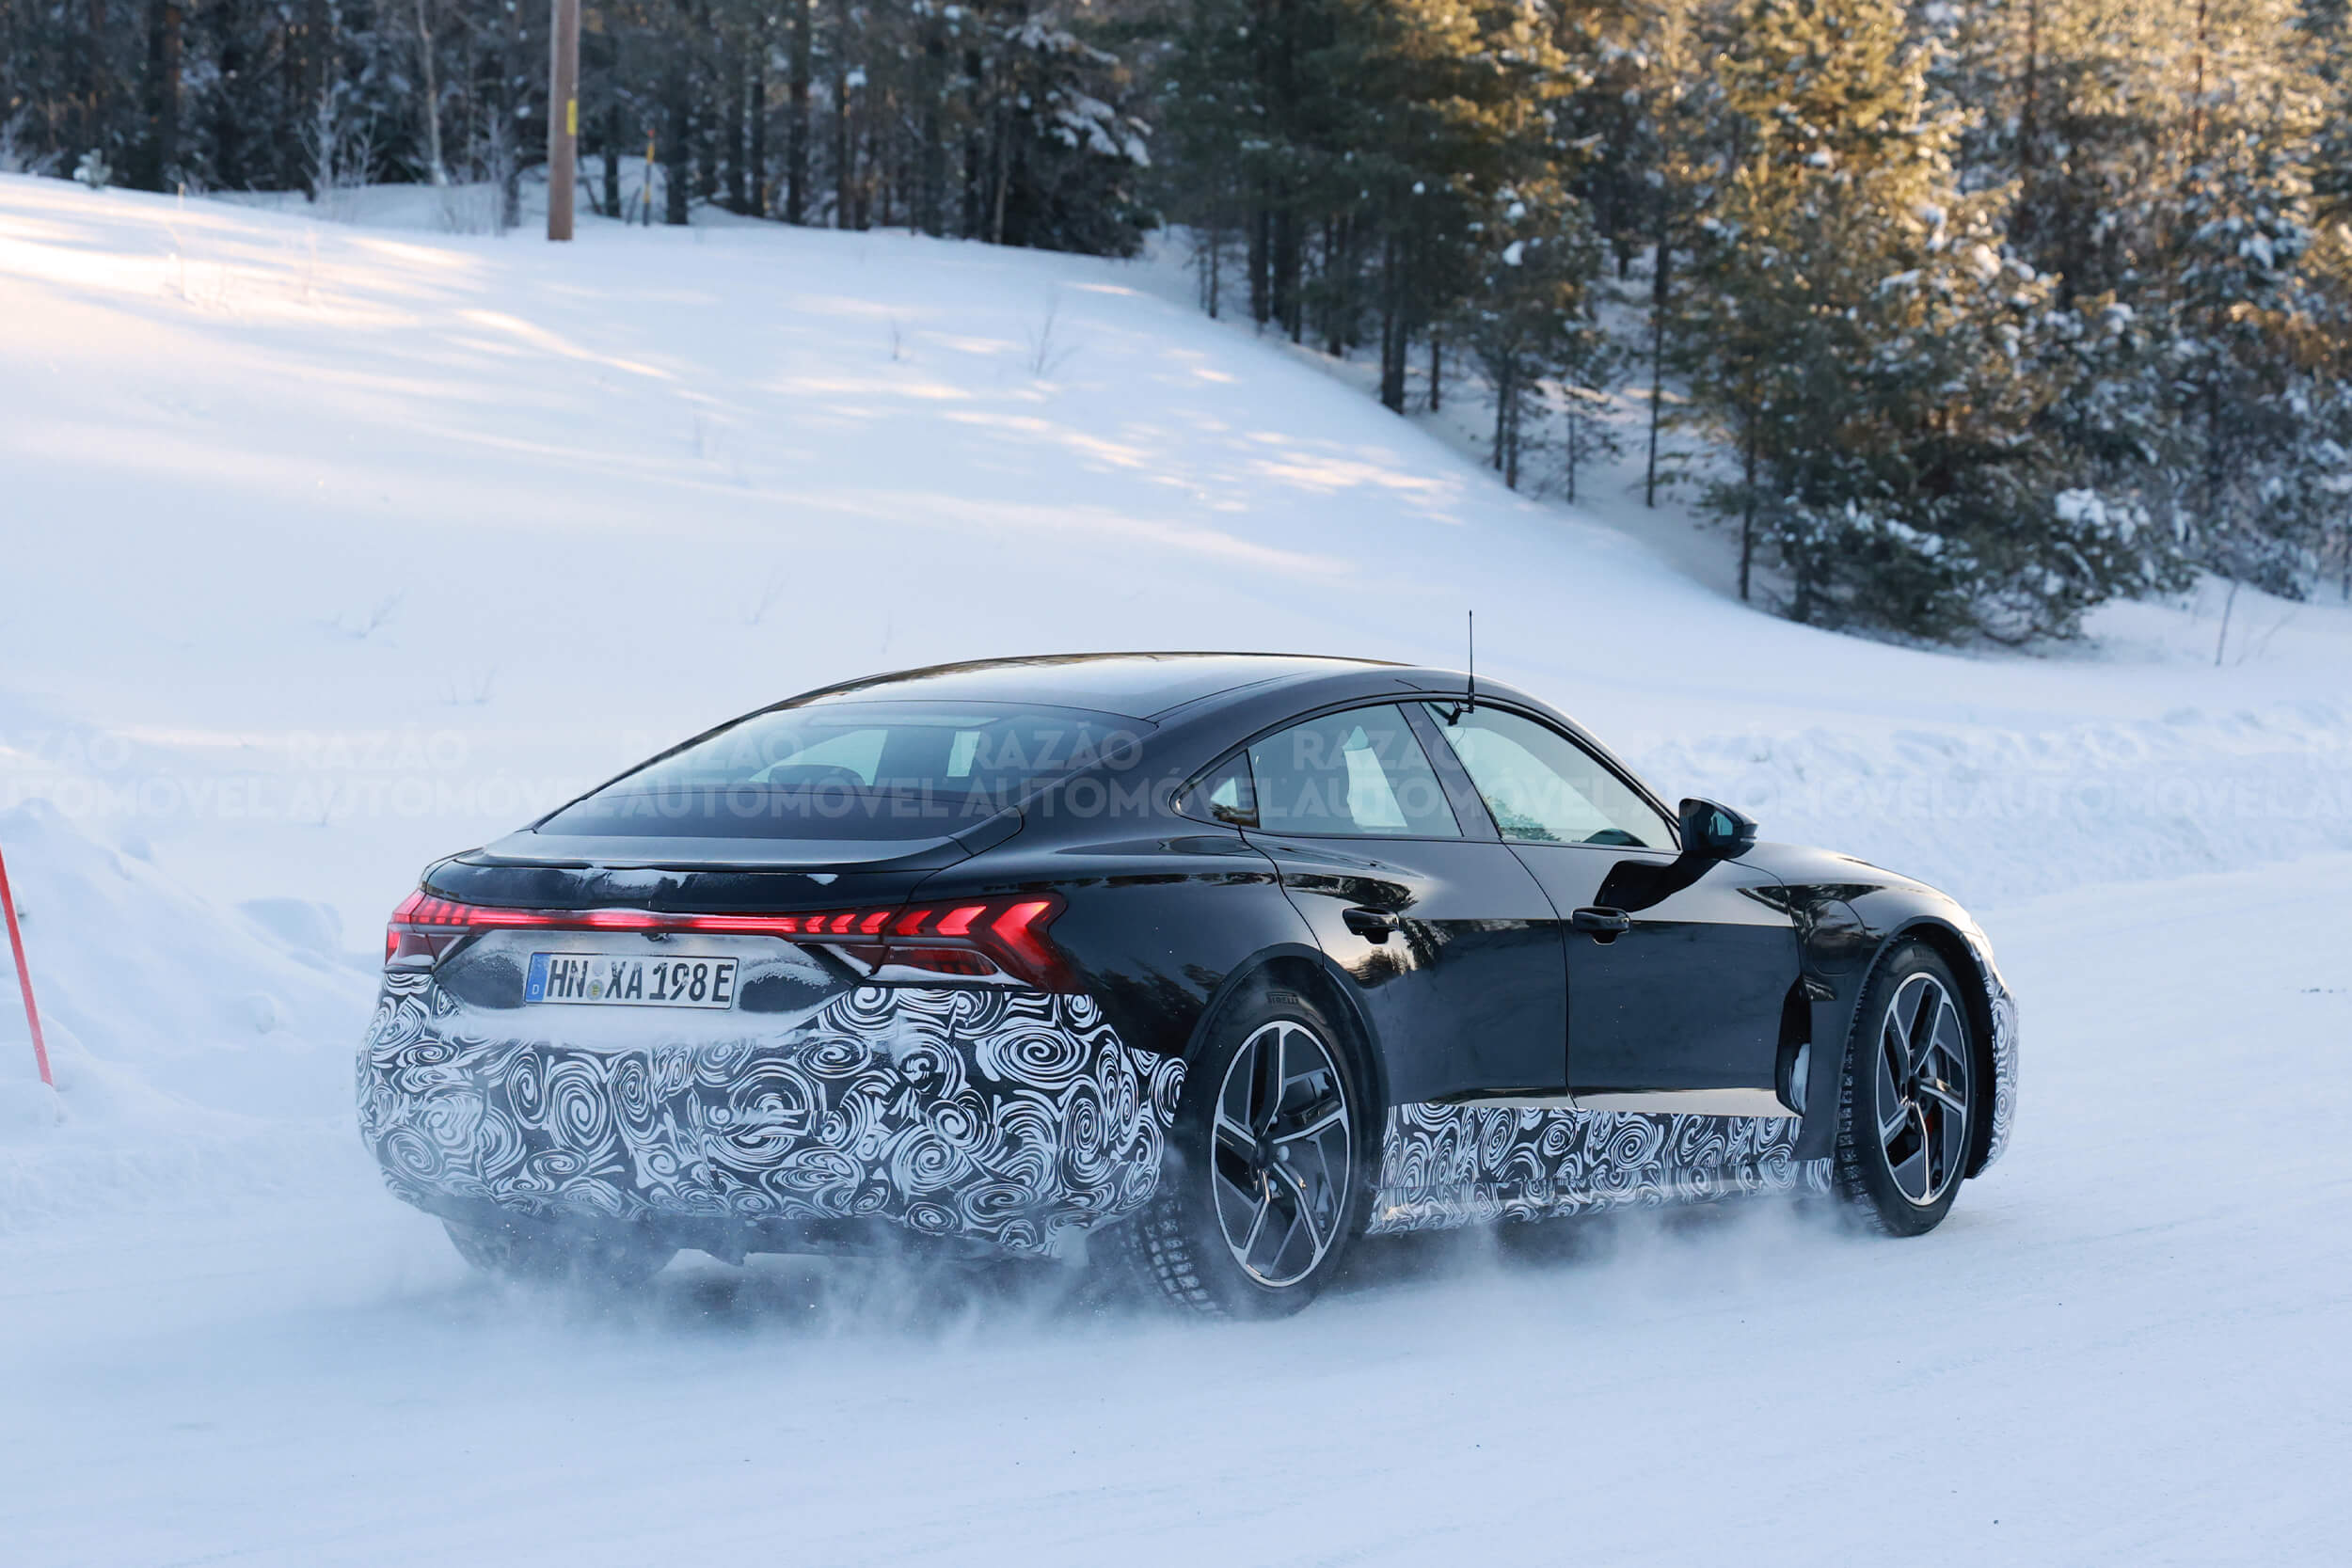 Audi e-tron em testes de inverno - 3/4 de traseira